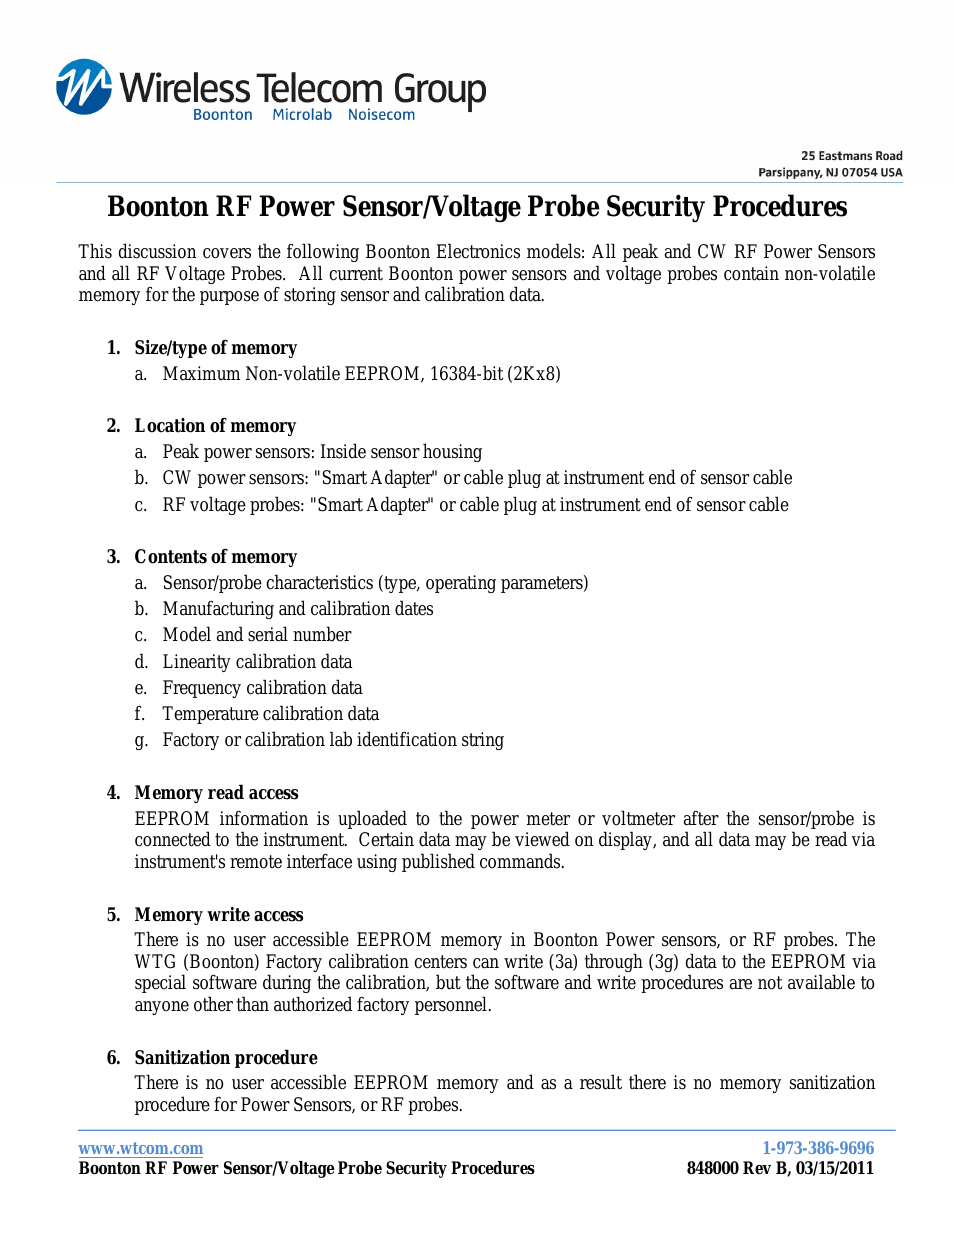 Sensor Security Procedures